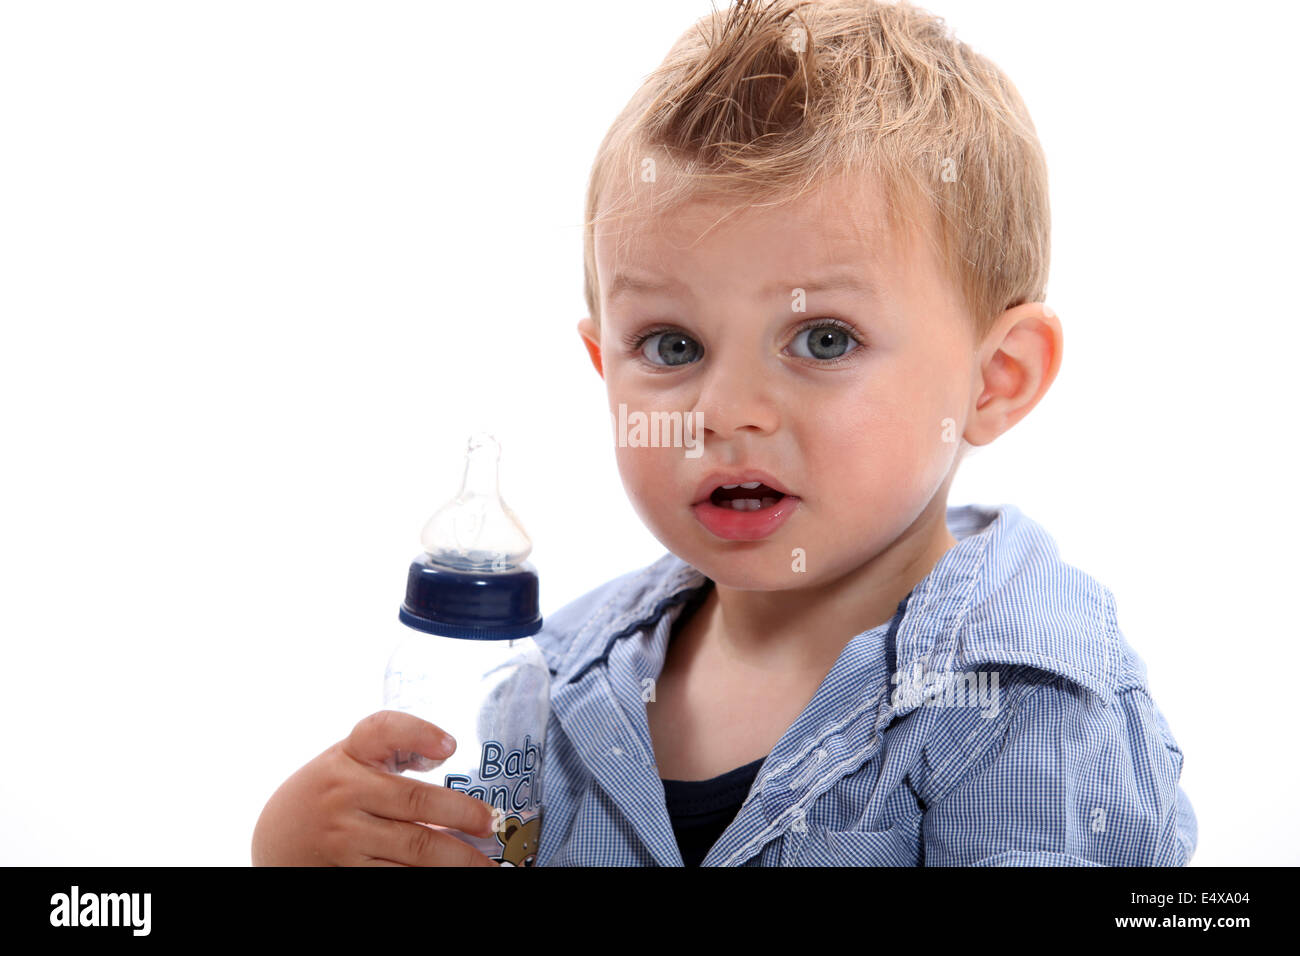 Boy holding bottle Stock Photo